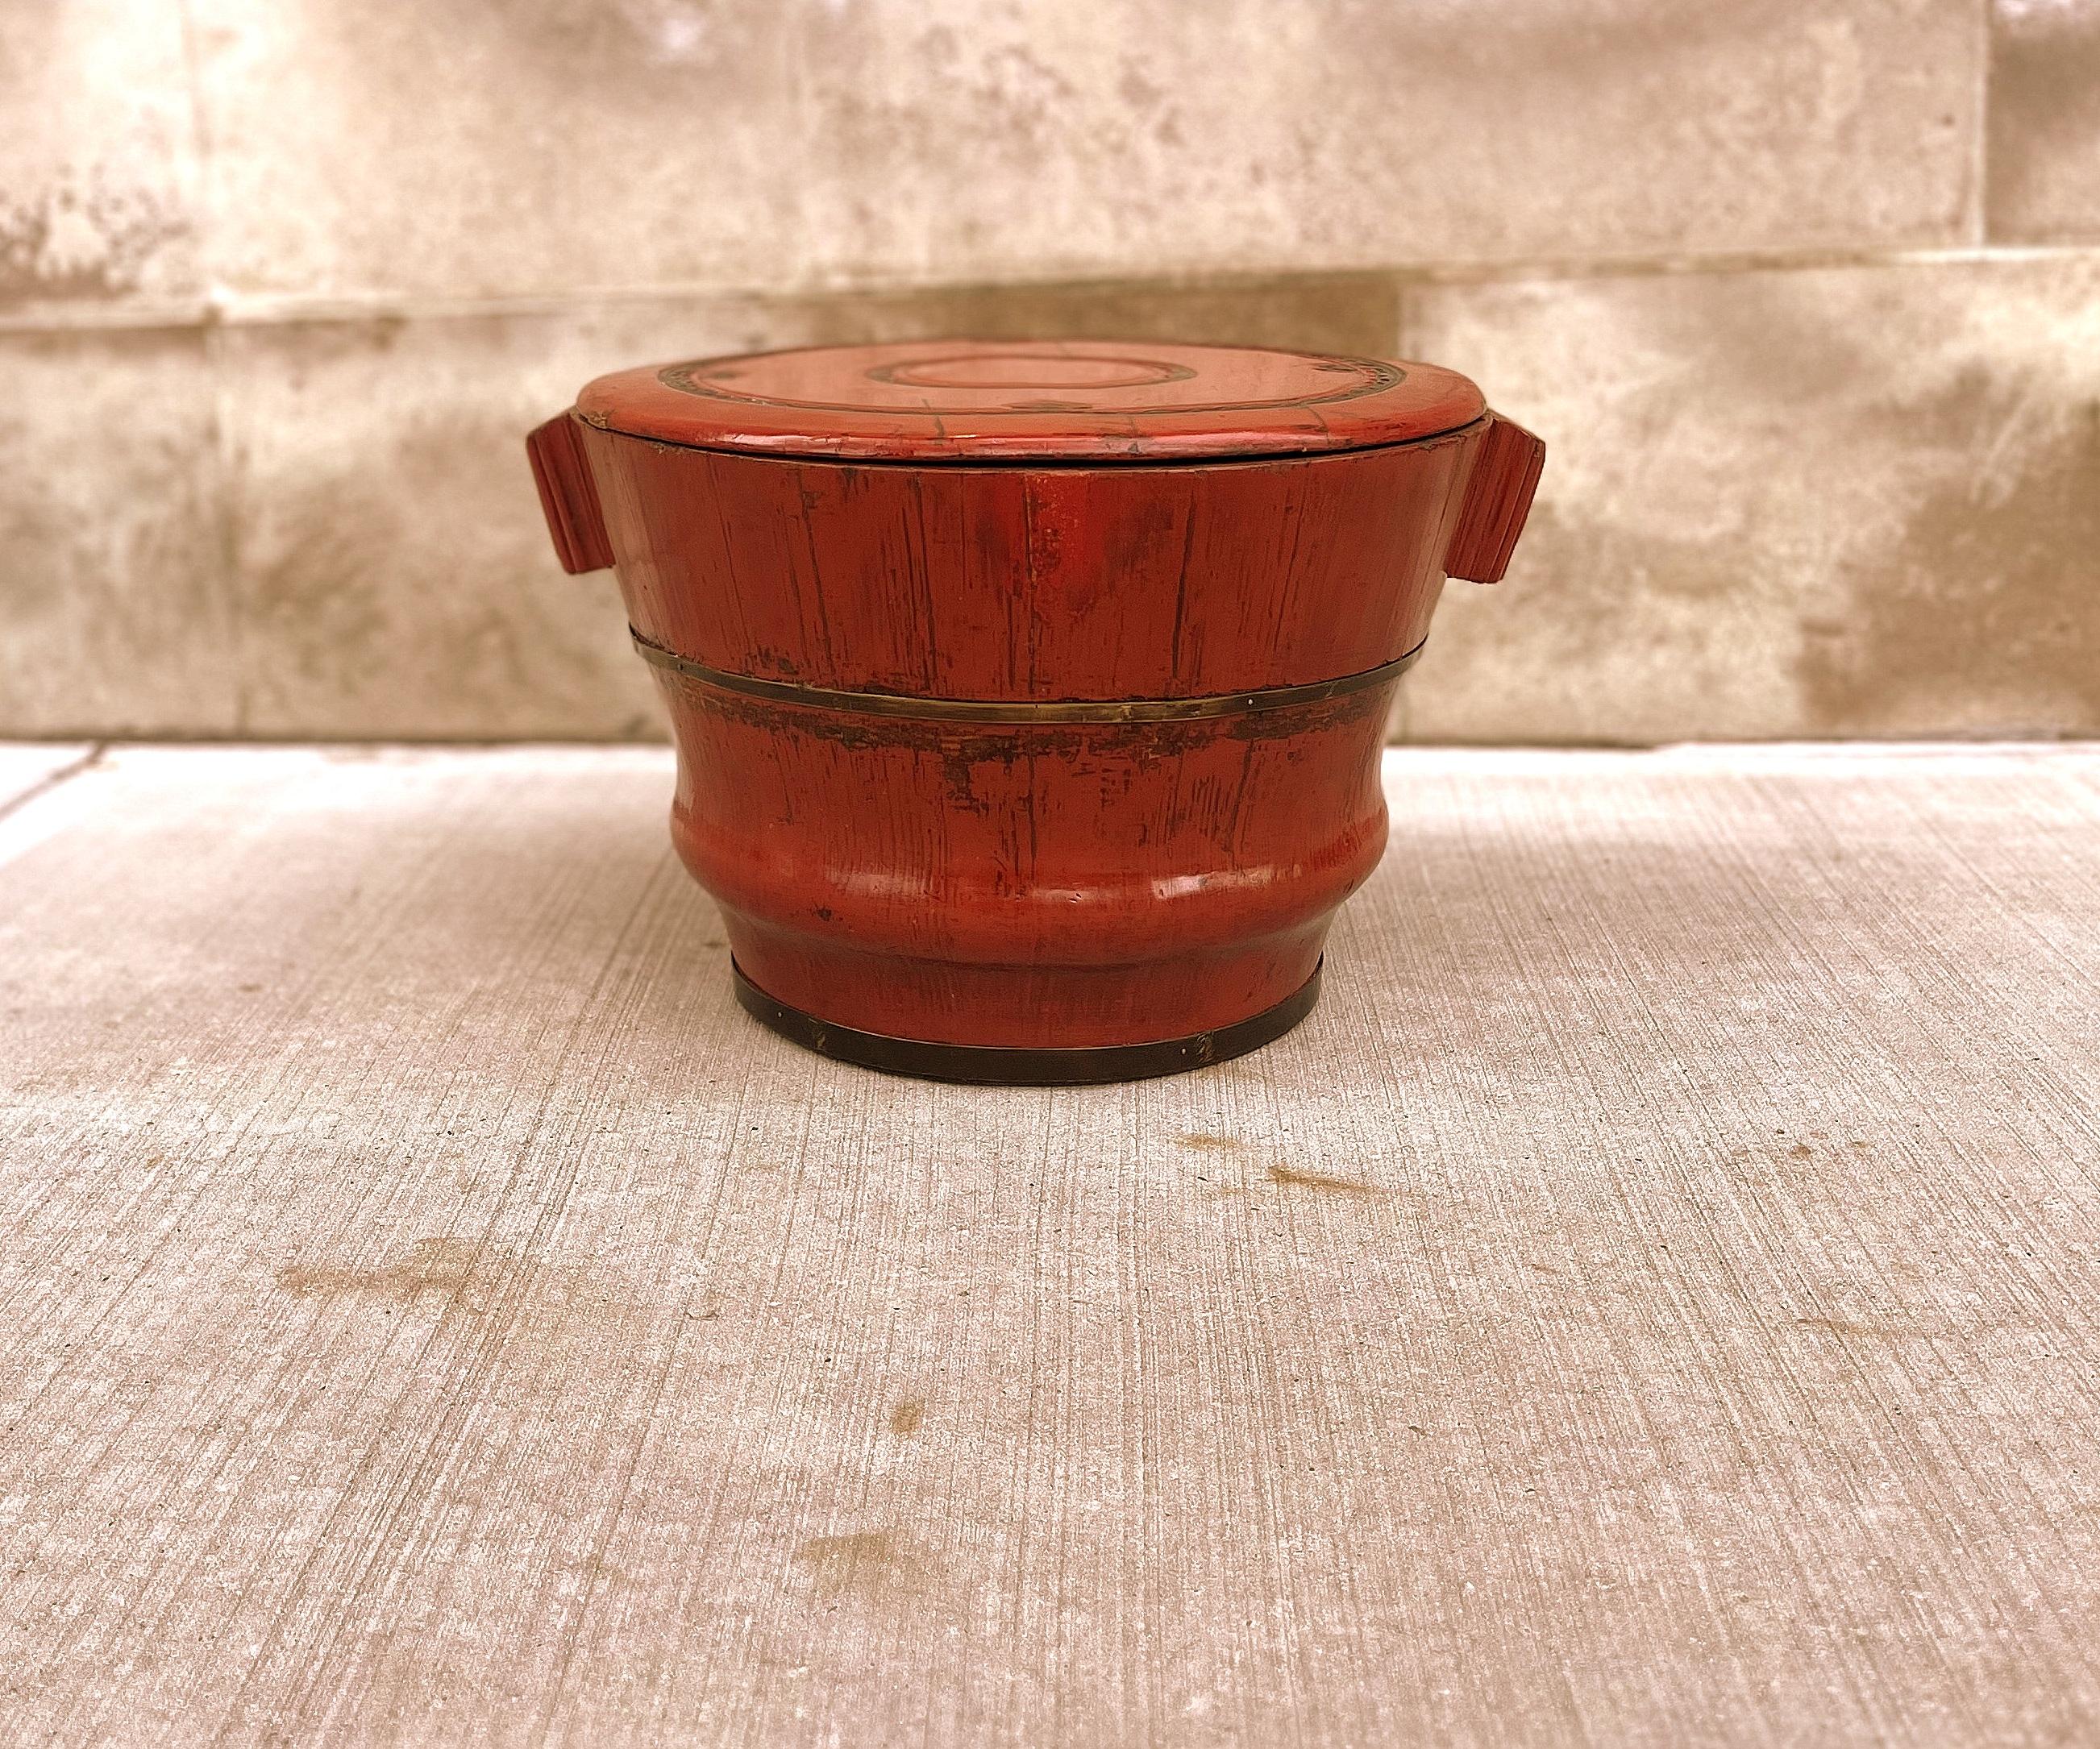 Der antike Behälter aus rotem Lackholz diente zur Aufbewahrung von Reis oder Körnern. Der rot lackierte Behälter mit zwei seitlichen kurzen Griffen hat eine runde Form, ist aus Ulmenholz gefertigt und hat einen Korpus mit Metallbügel.  Oberer Deckel